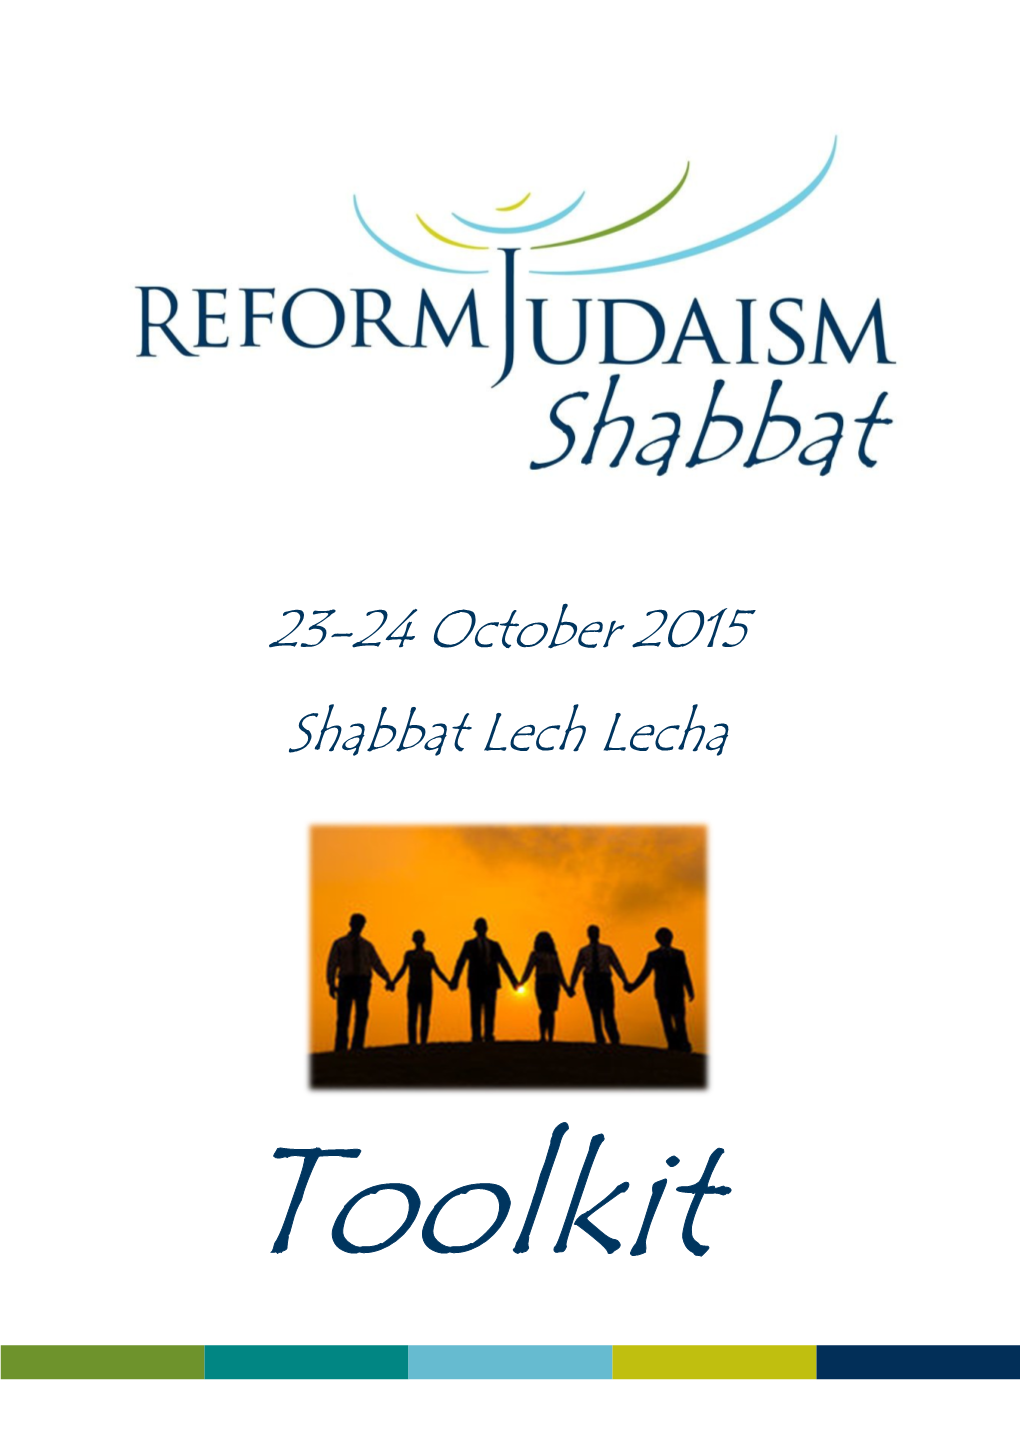 23-24 October 2015 Shabbat Lech Lecha